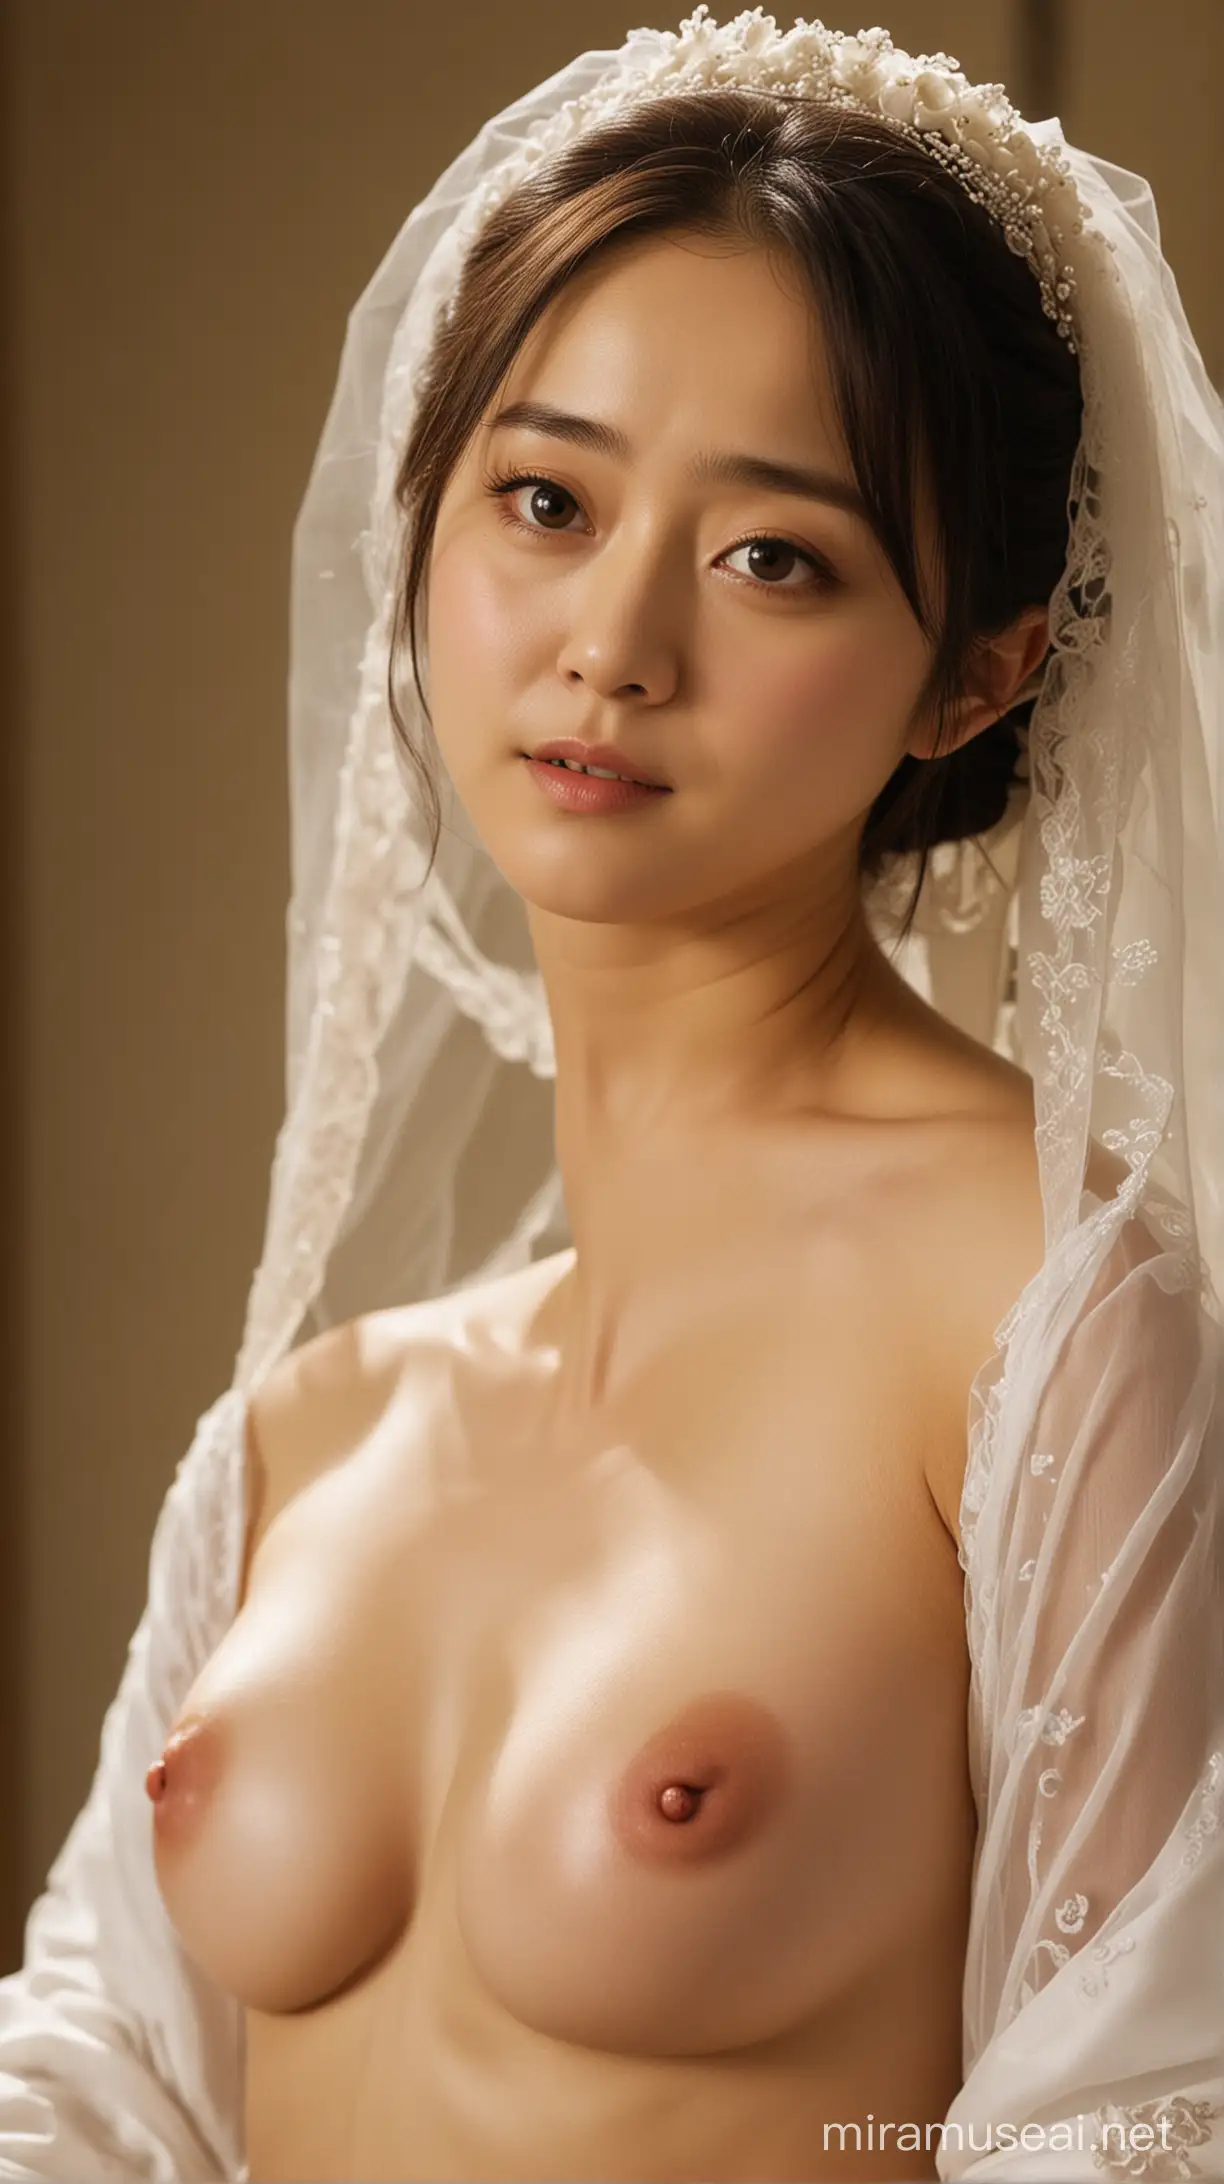 Moon Geunyoung as Seo Bo Eun in My Little Bride Exudes Natural Beauty